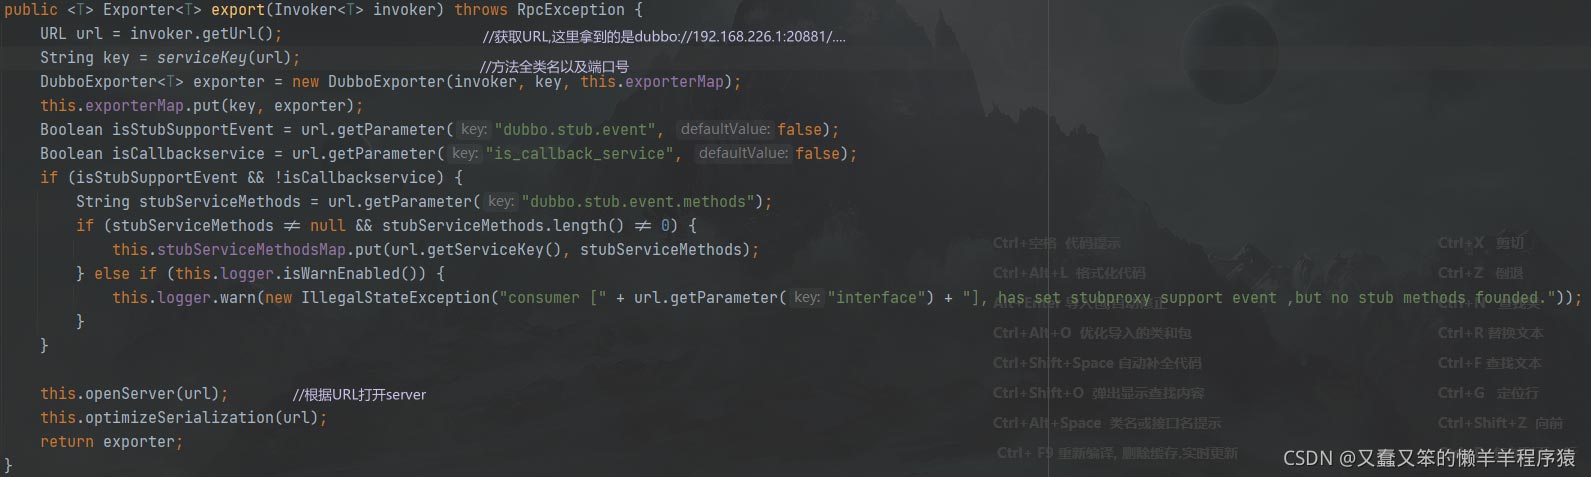 java开发分布式服务框架Dubbo暴露服务的示例分析